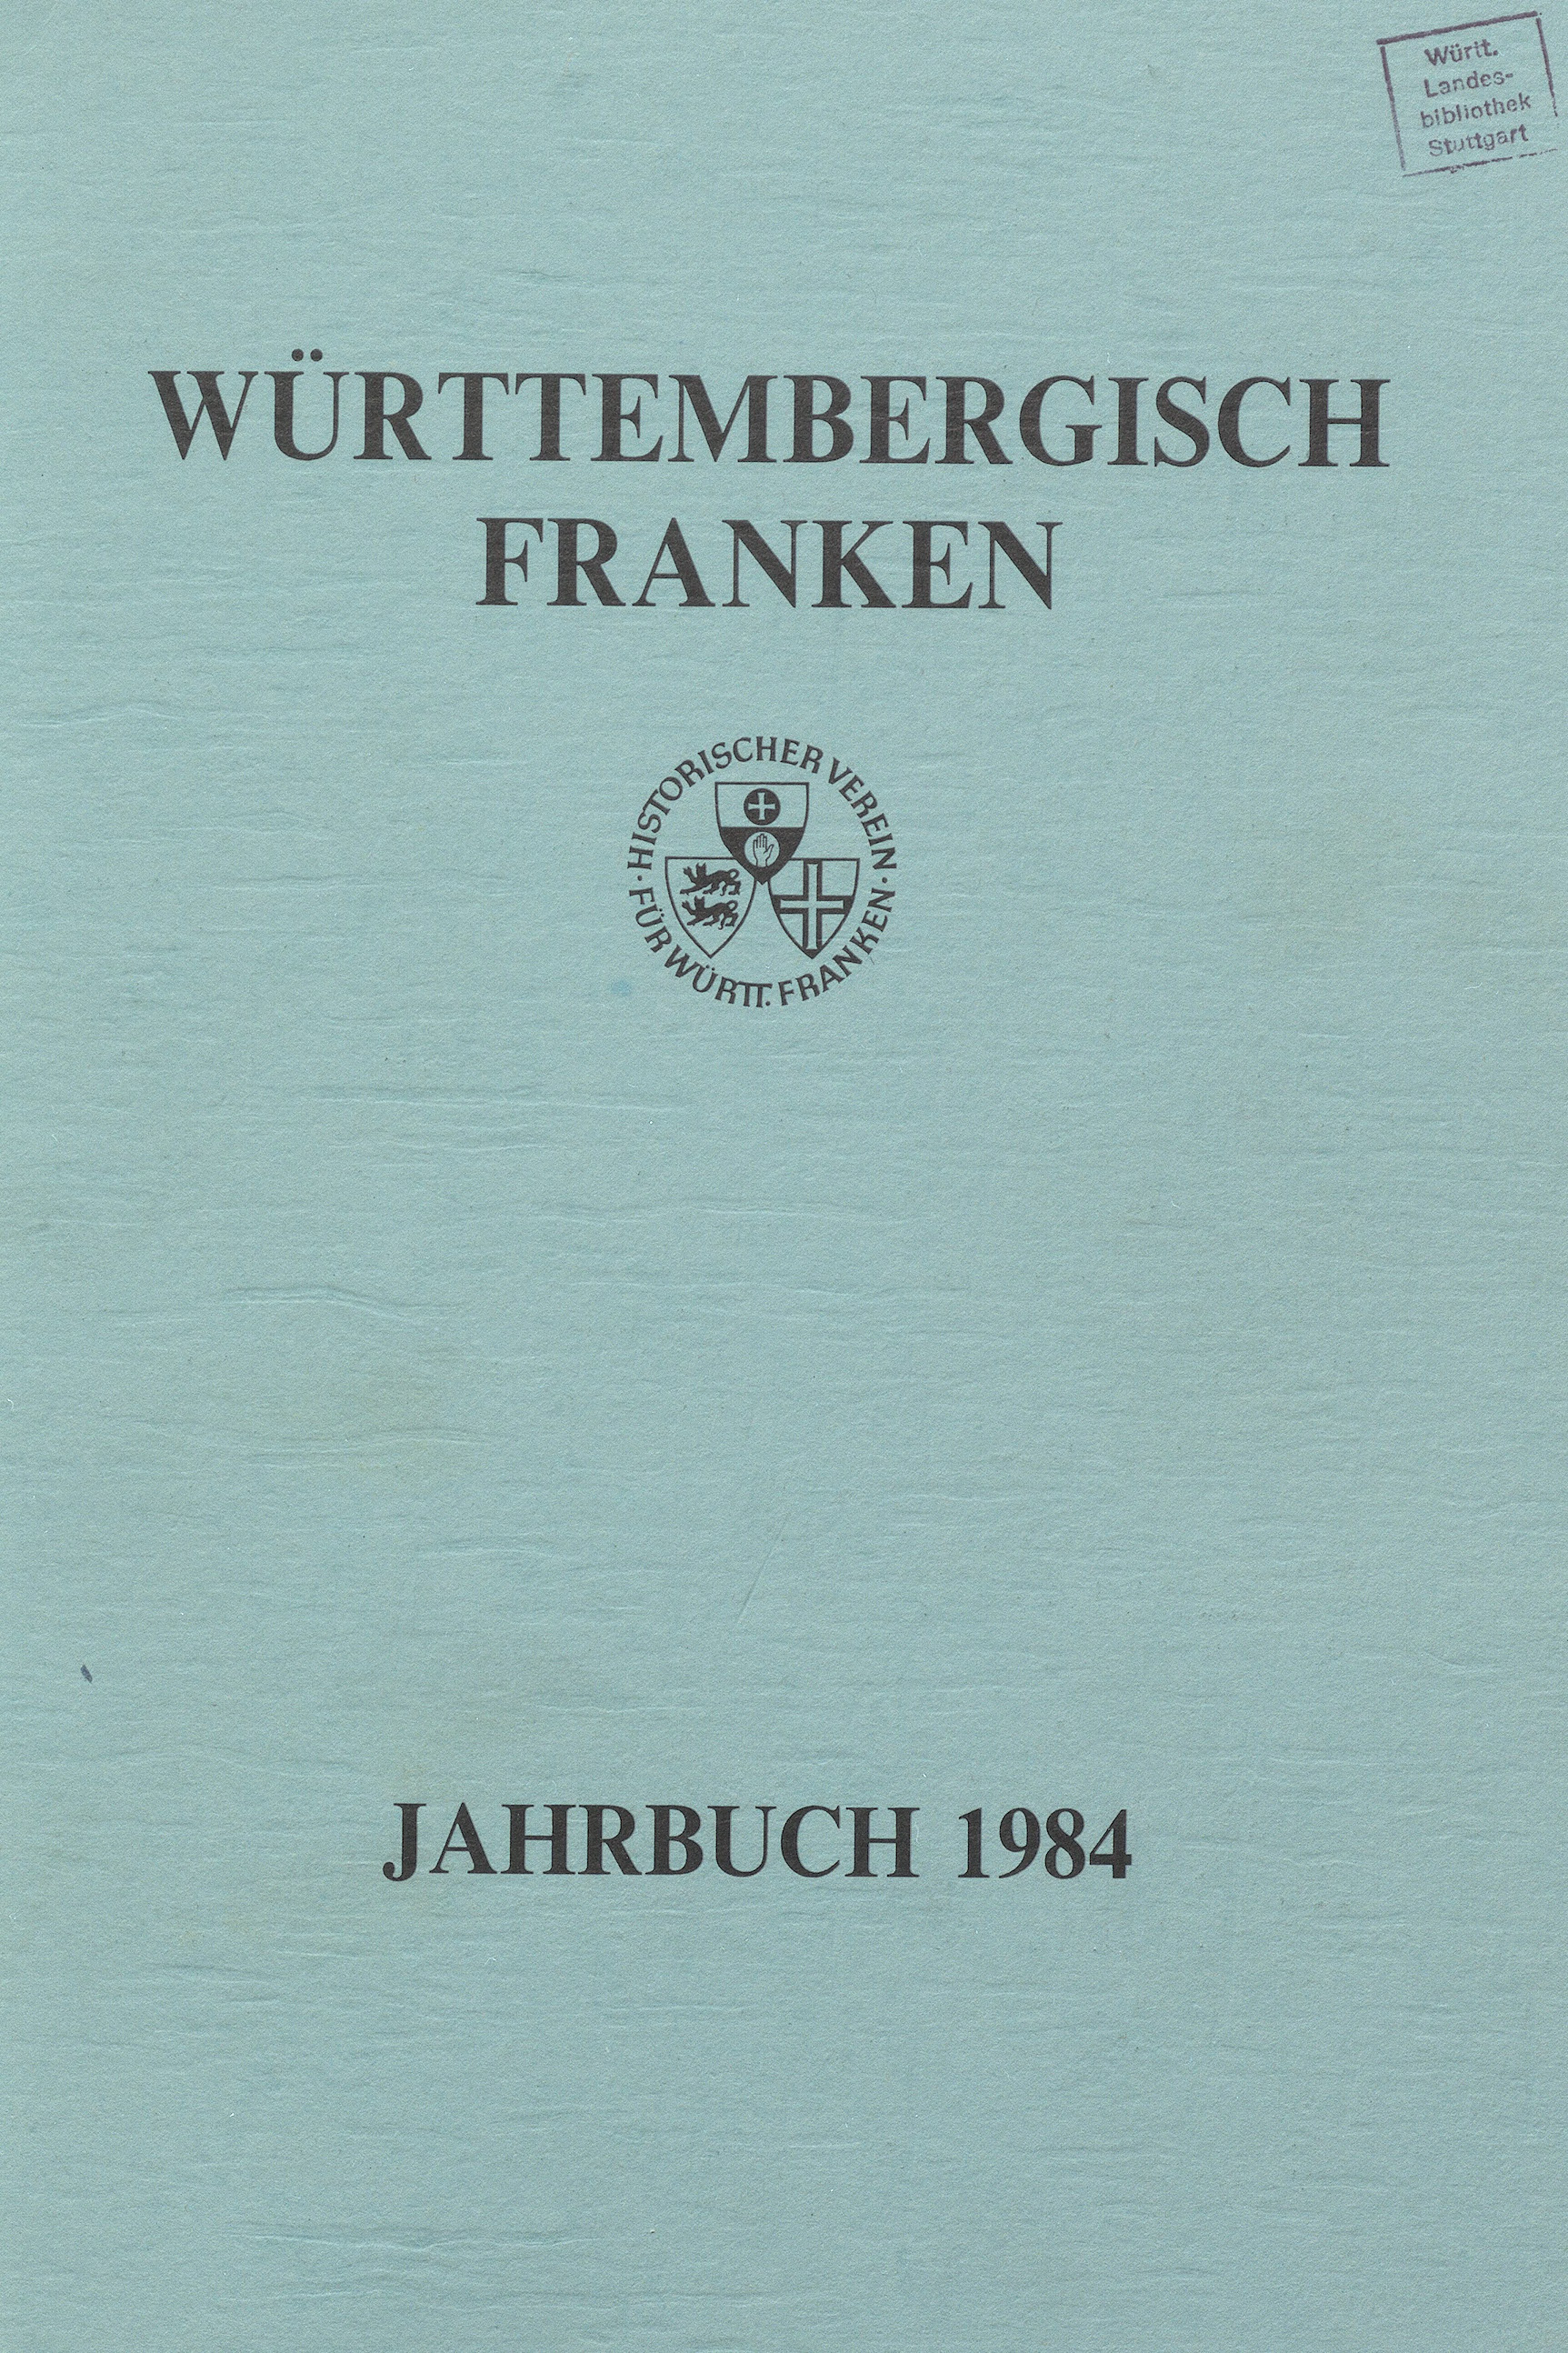                     Ansehen Bd. 68 (1984): Württembergisch Franken
                